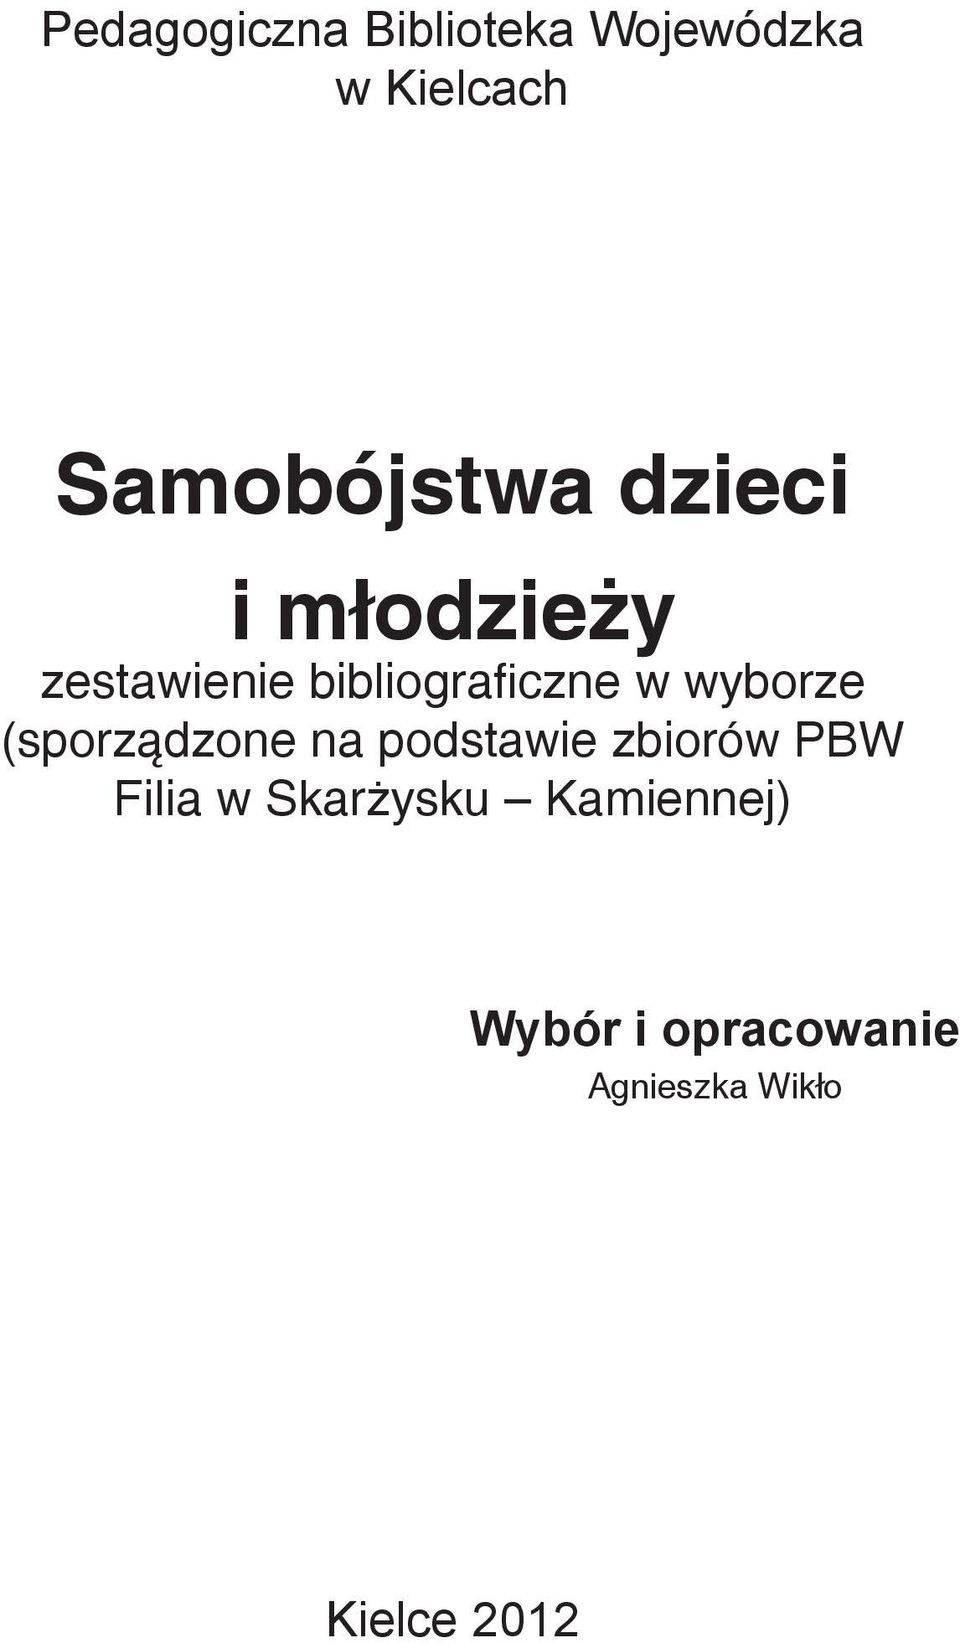 (sporządzone na podstawie zbiorów PBW Filia w Skarżysku